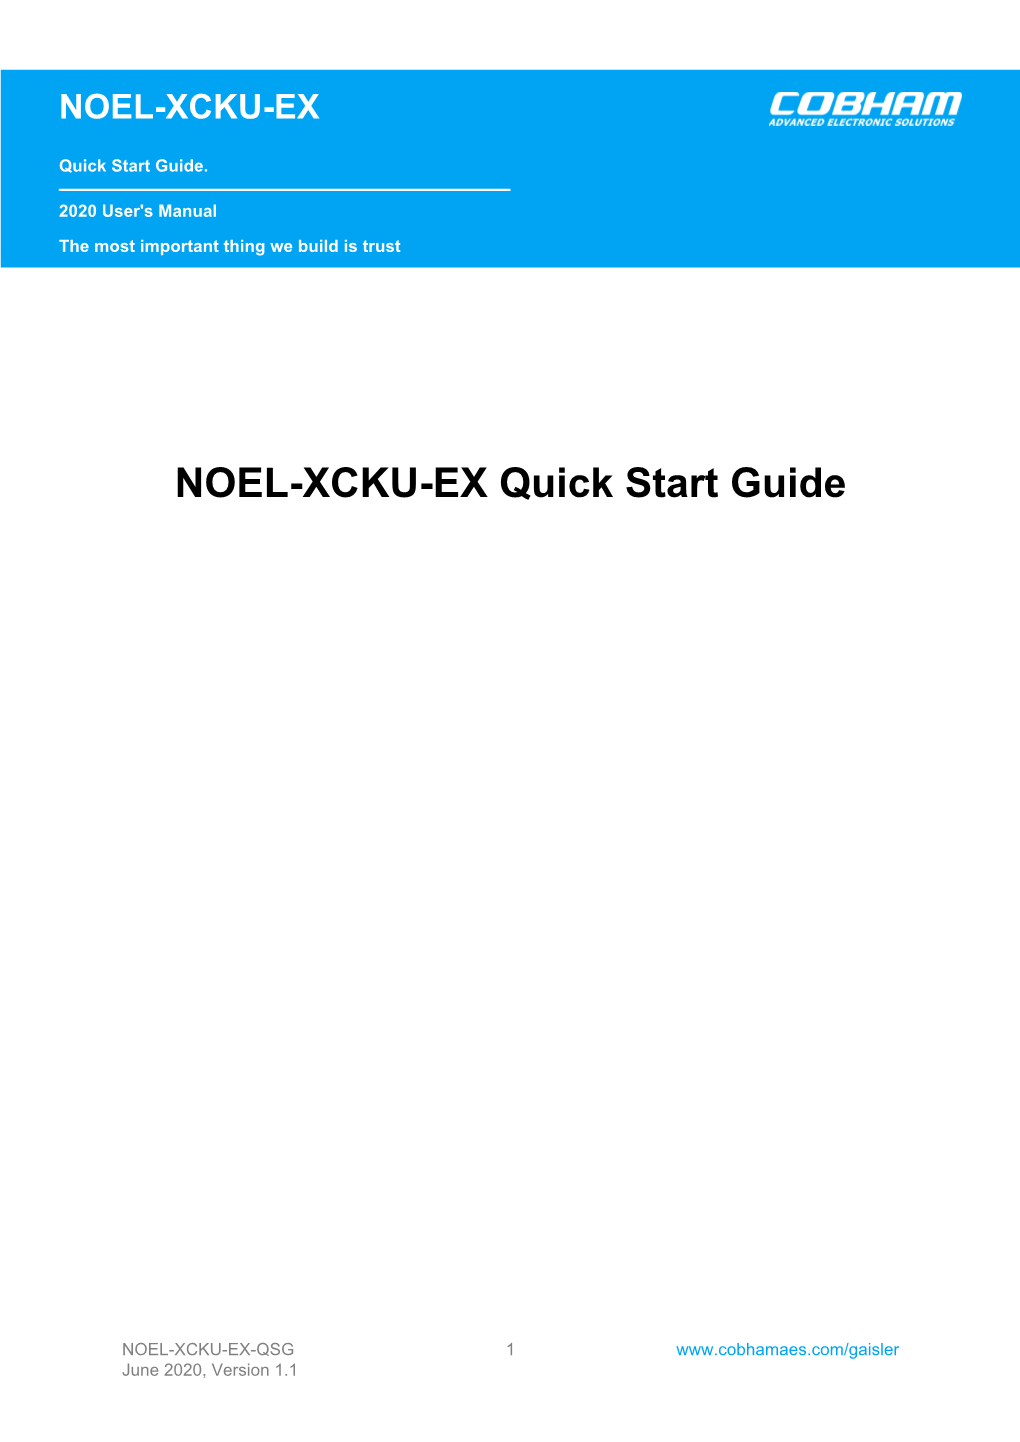 NOEL-XCKU-EX Quick Start Guide